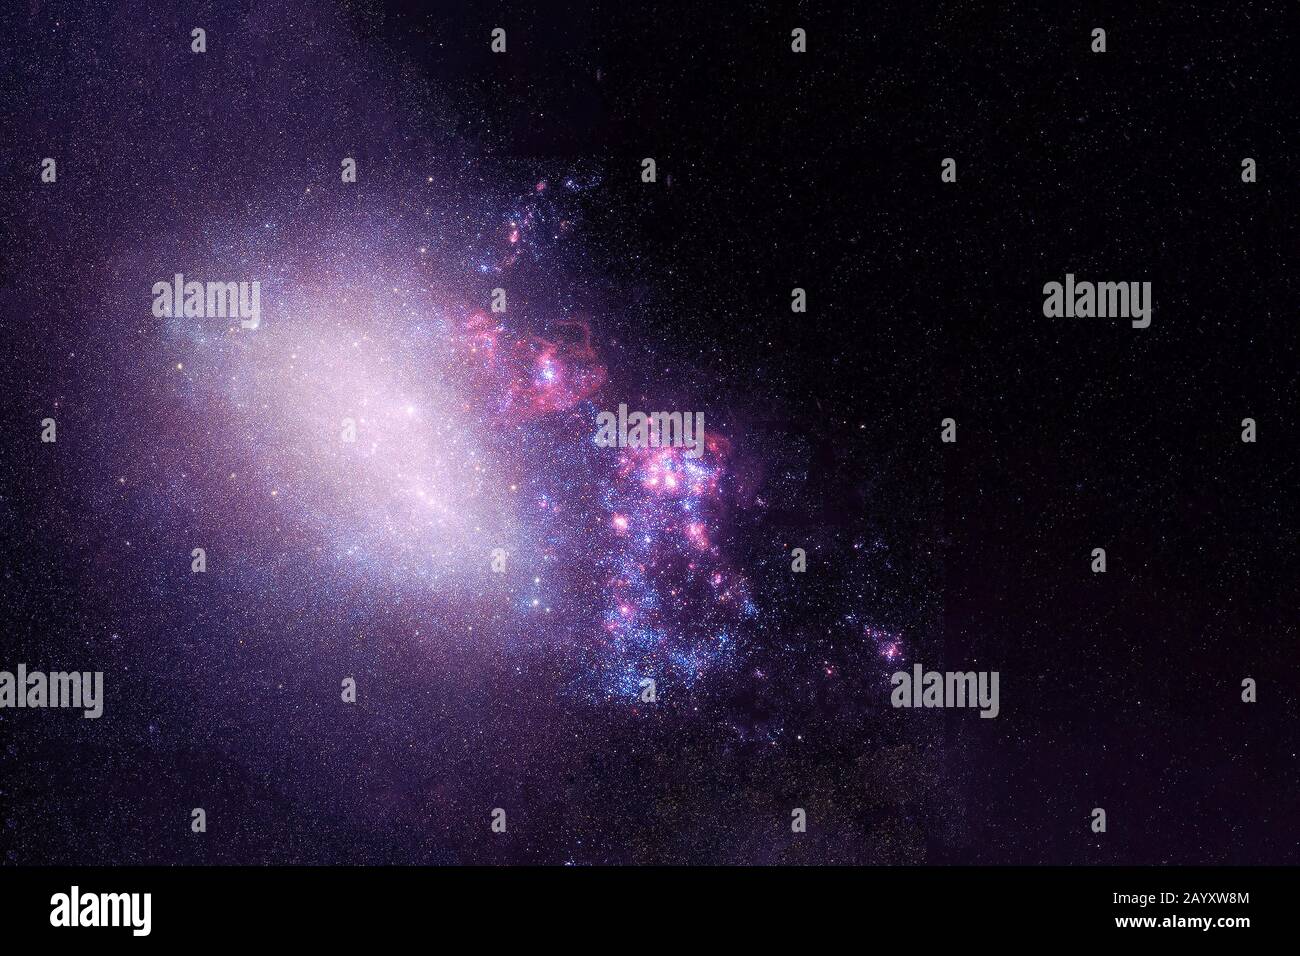 Eine helle Galaxie im tiefen Raum. Elemente dieses Bildes wurden von der NASA eingerichtet. Stockfoto